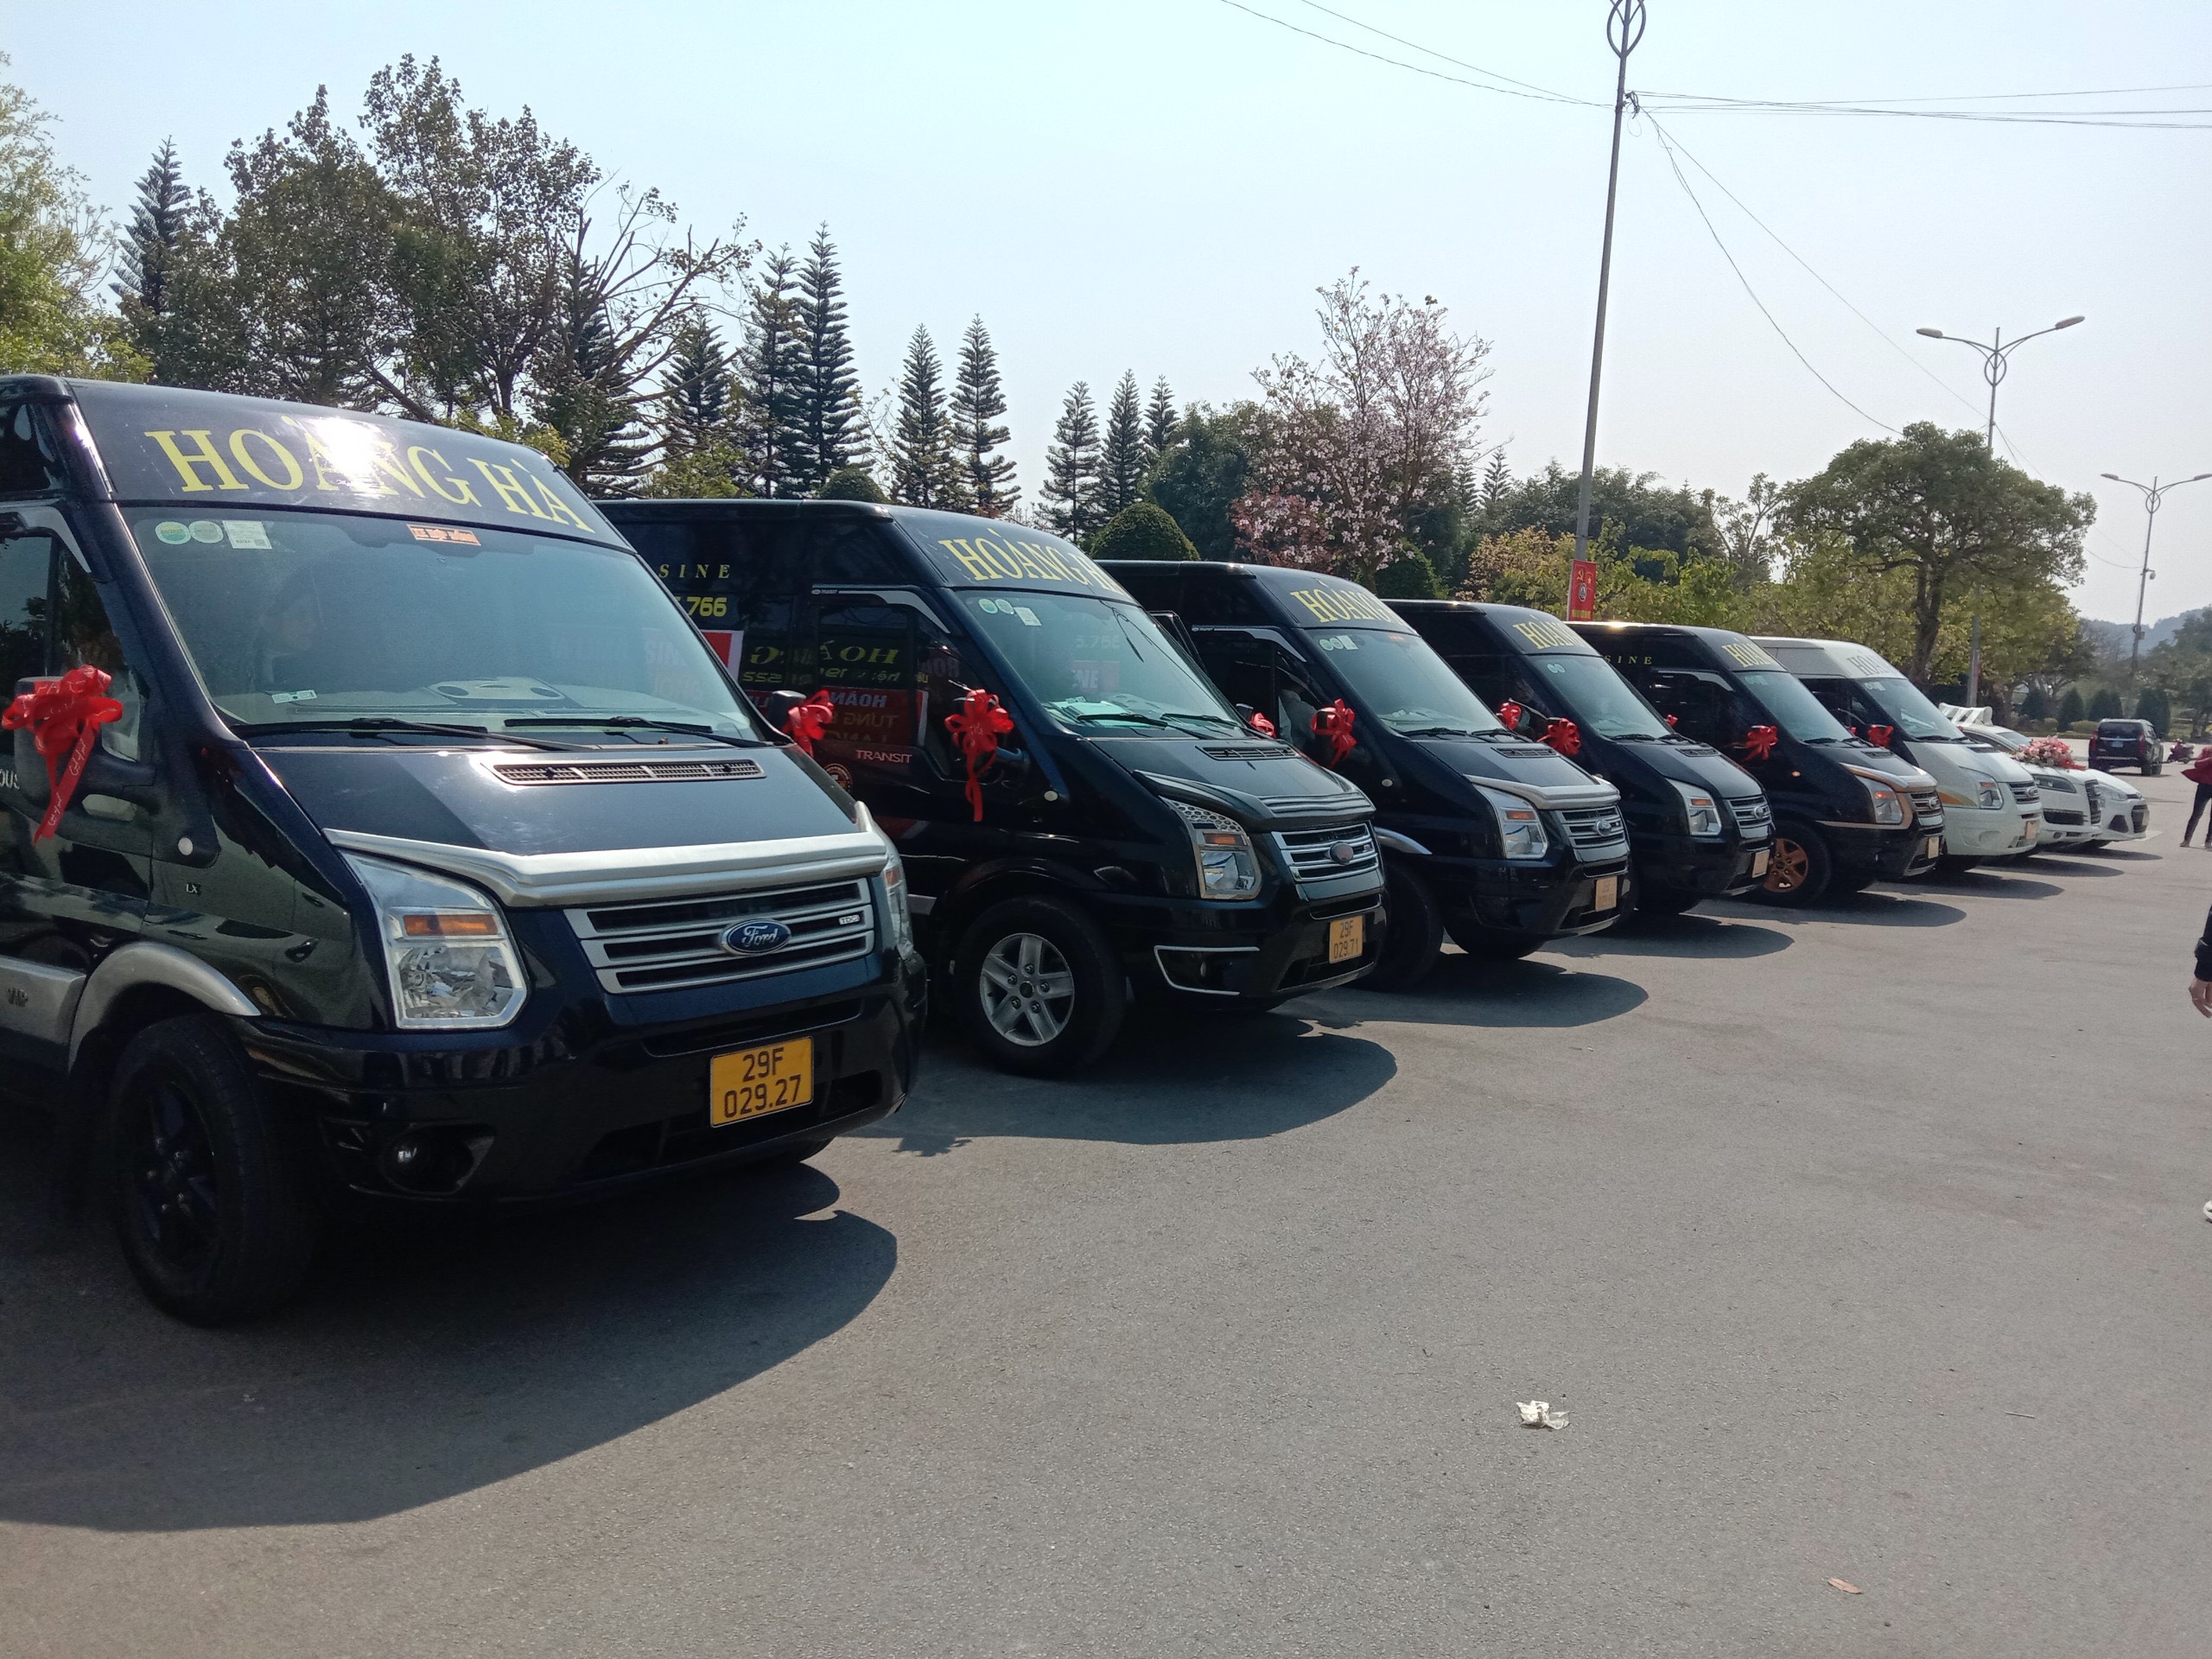 Nhà xe limousine Hoàng Hà - Sự lựa chọn số 1 cho chuyến đi Hà Nội Lạng Sơn